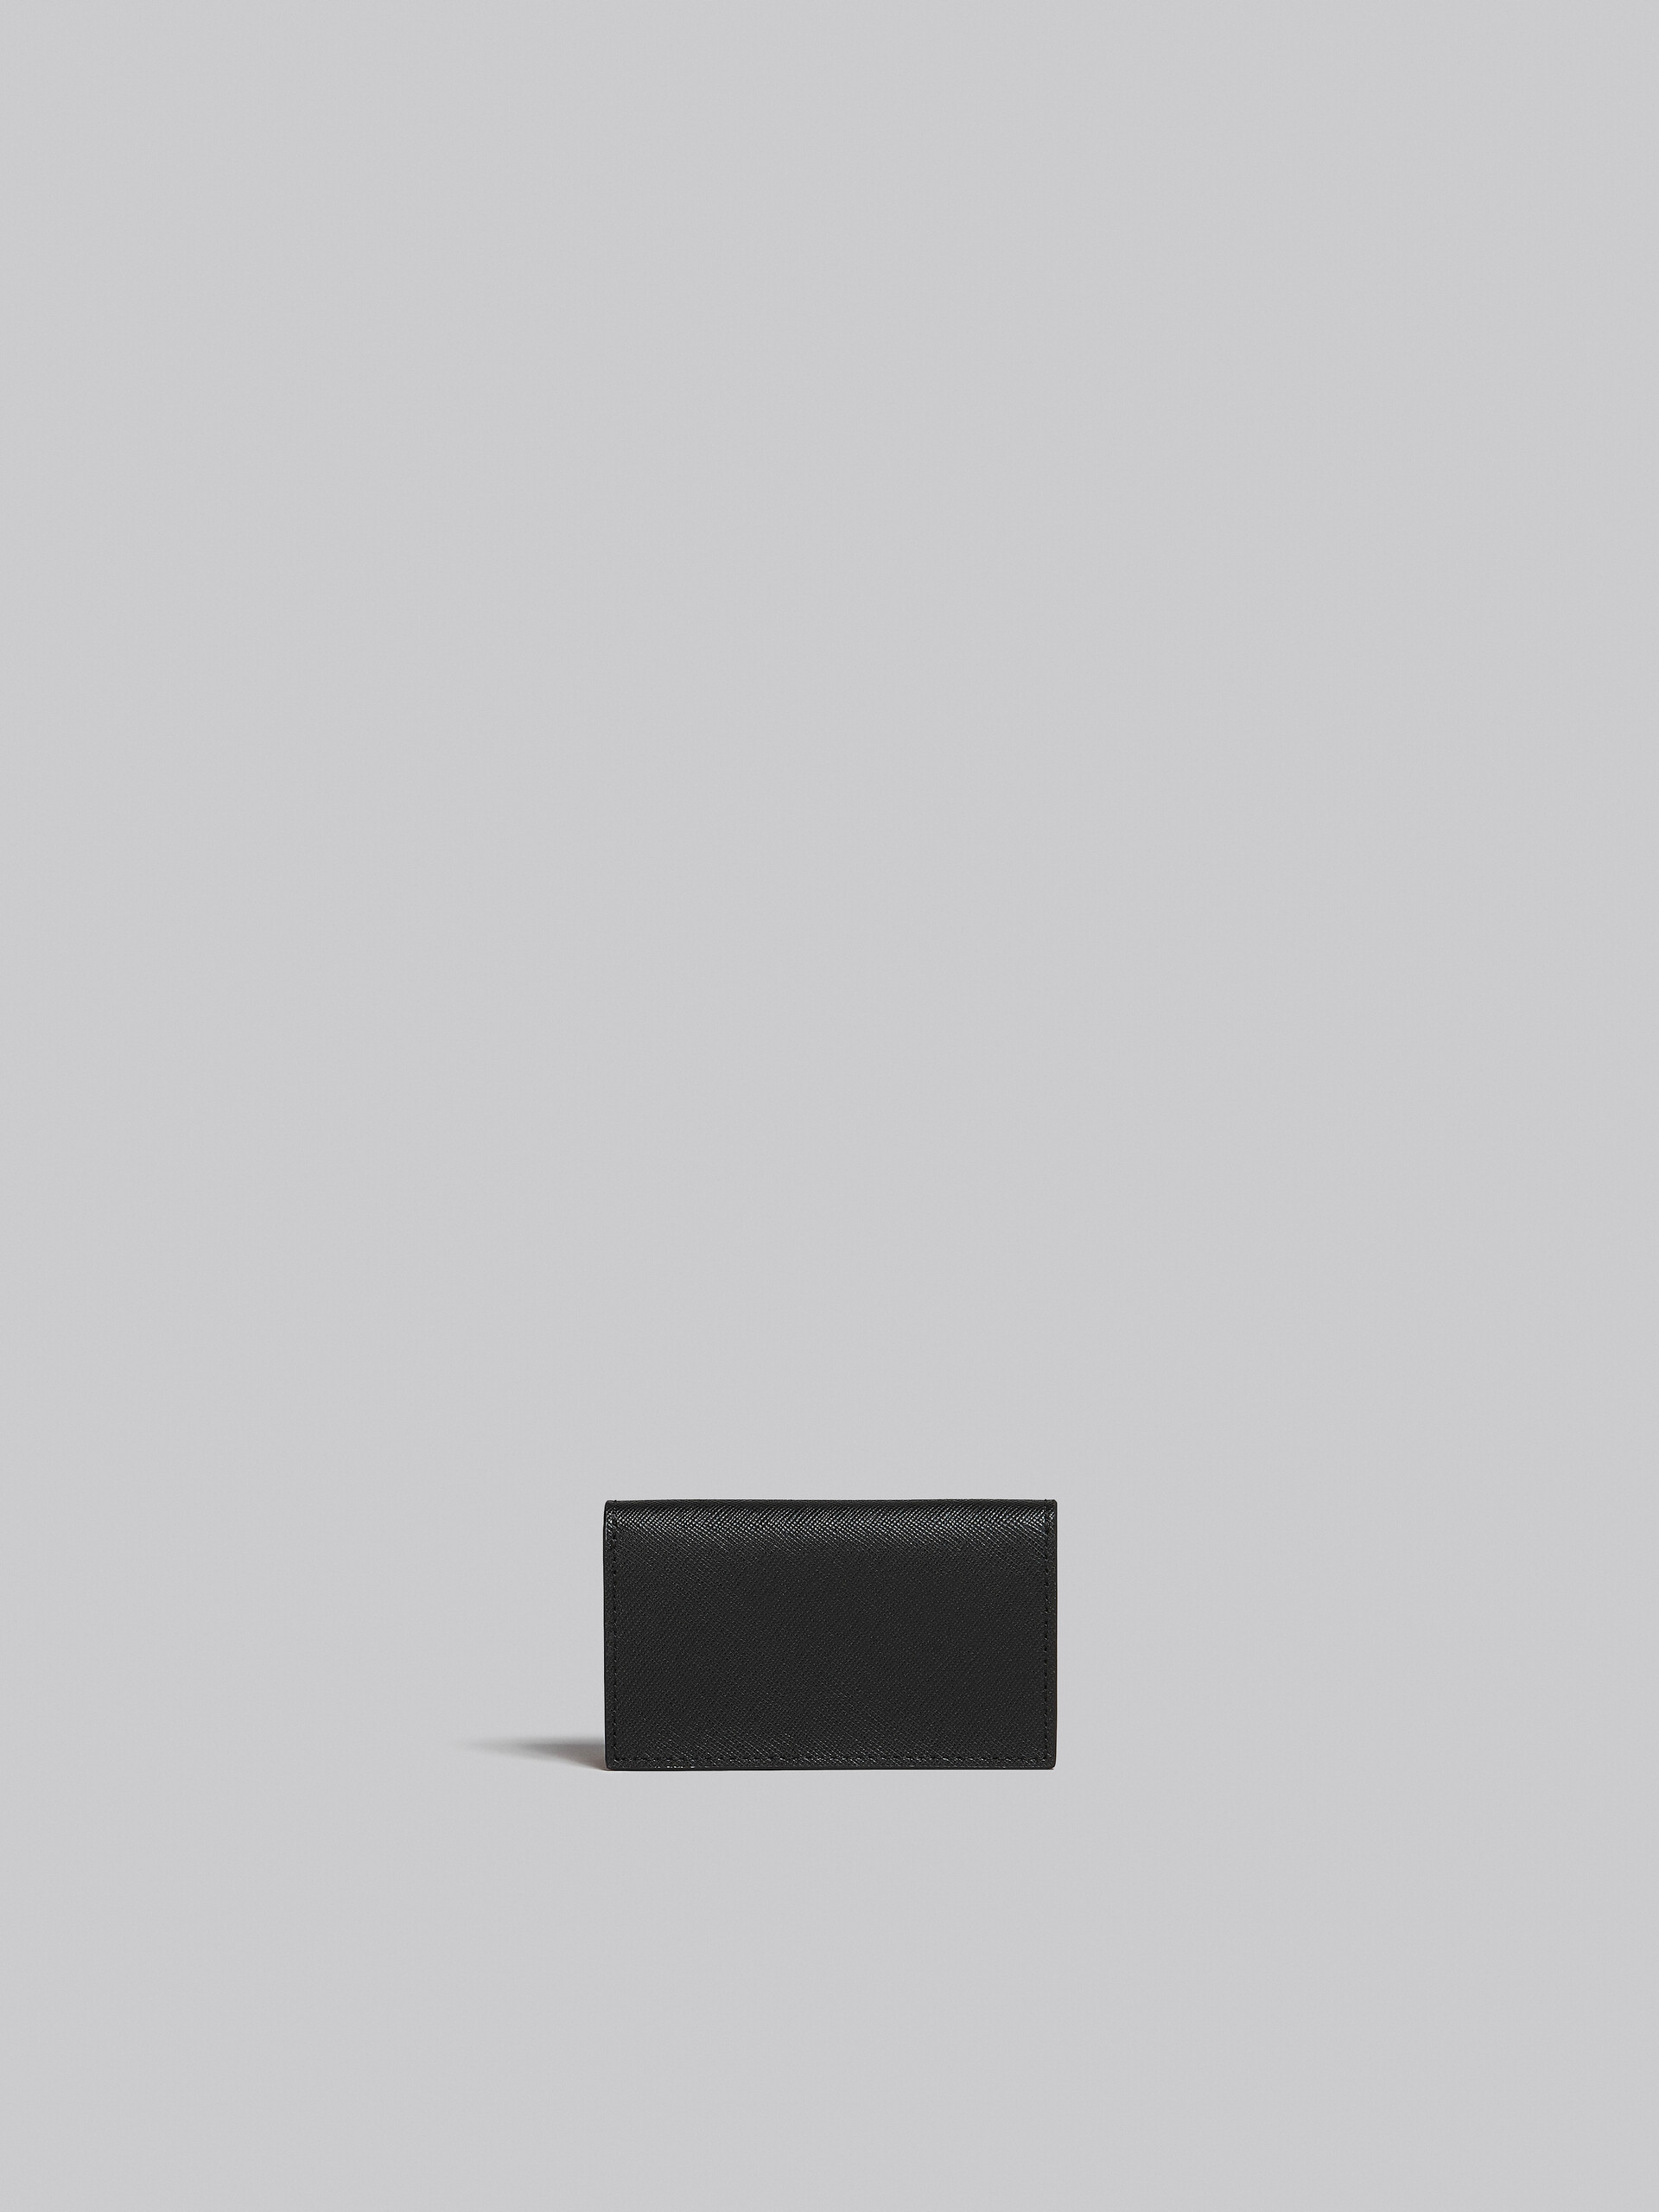 サフィアーノレザー ブラック ビジネスカードケース - 財布 - Image 3